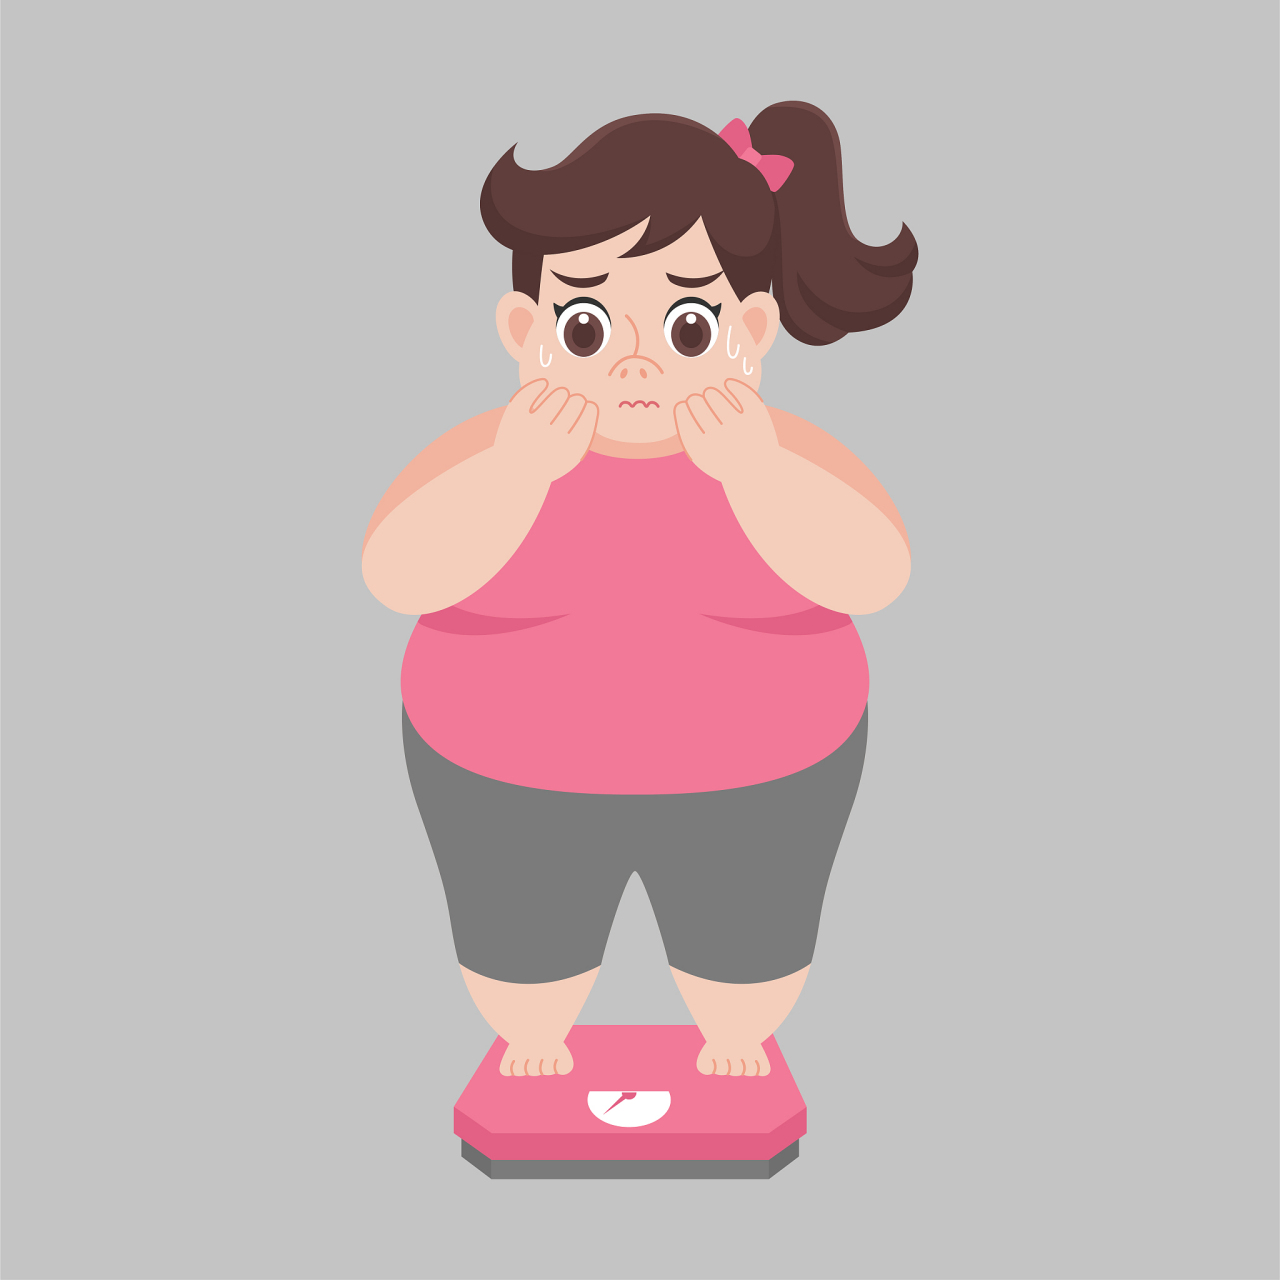 此外,肥胖还可能引发高血压,高血糖等慢性病